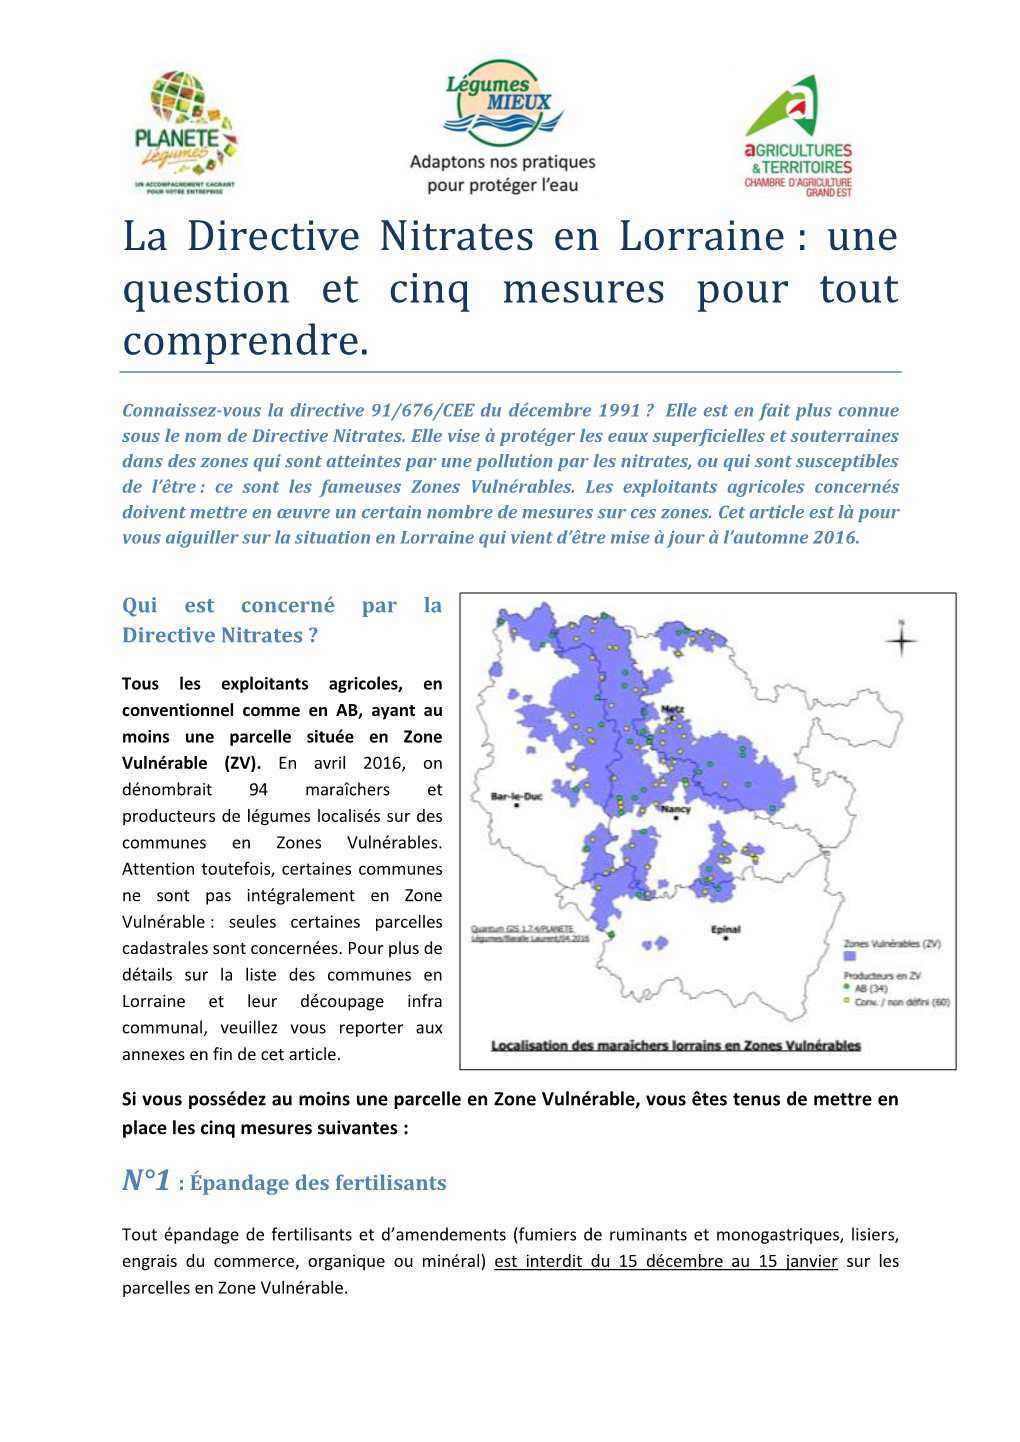 La Directive Nitrates En Lorraine : Une Question Et Cinq Mesures Pour Tout Comprendre